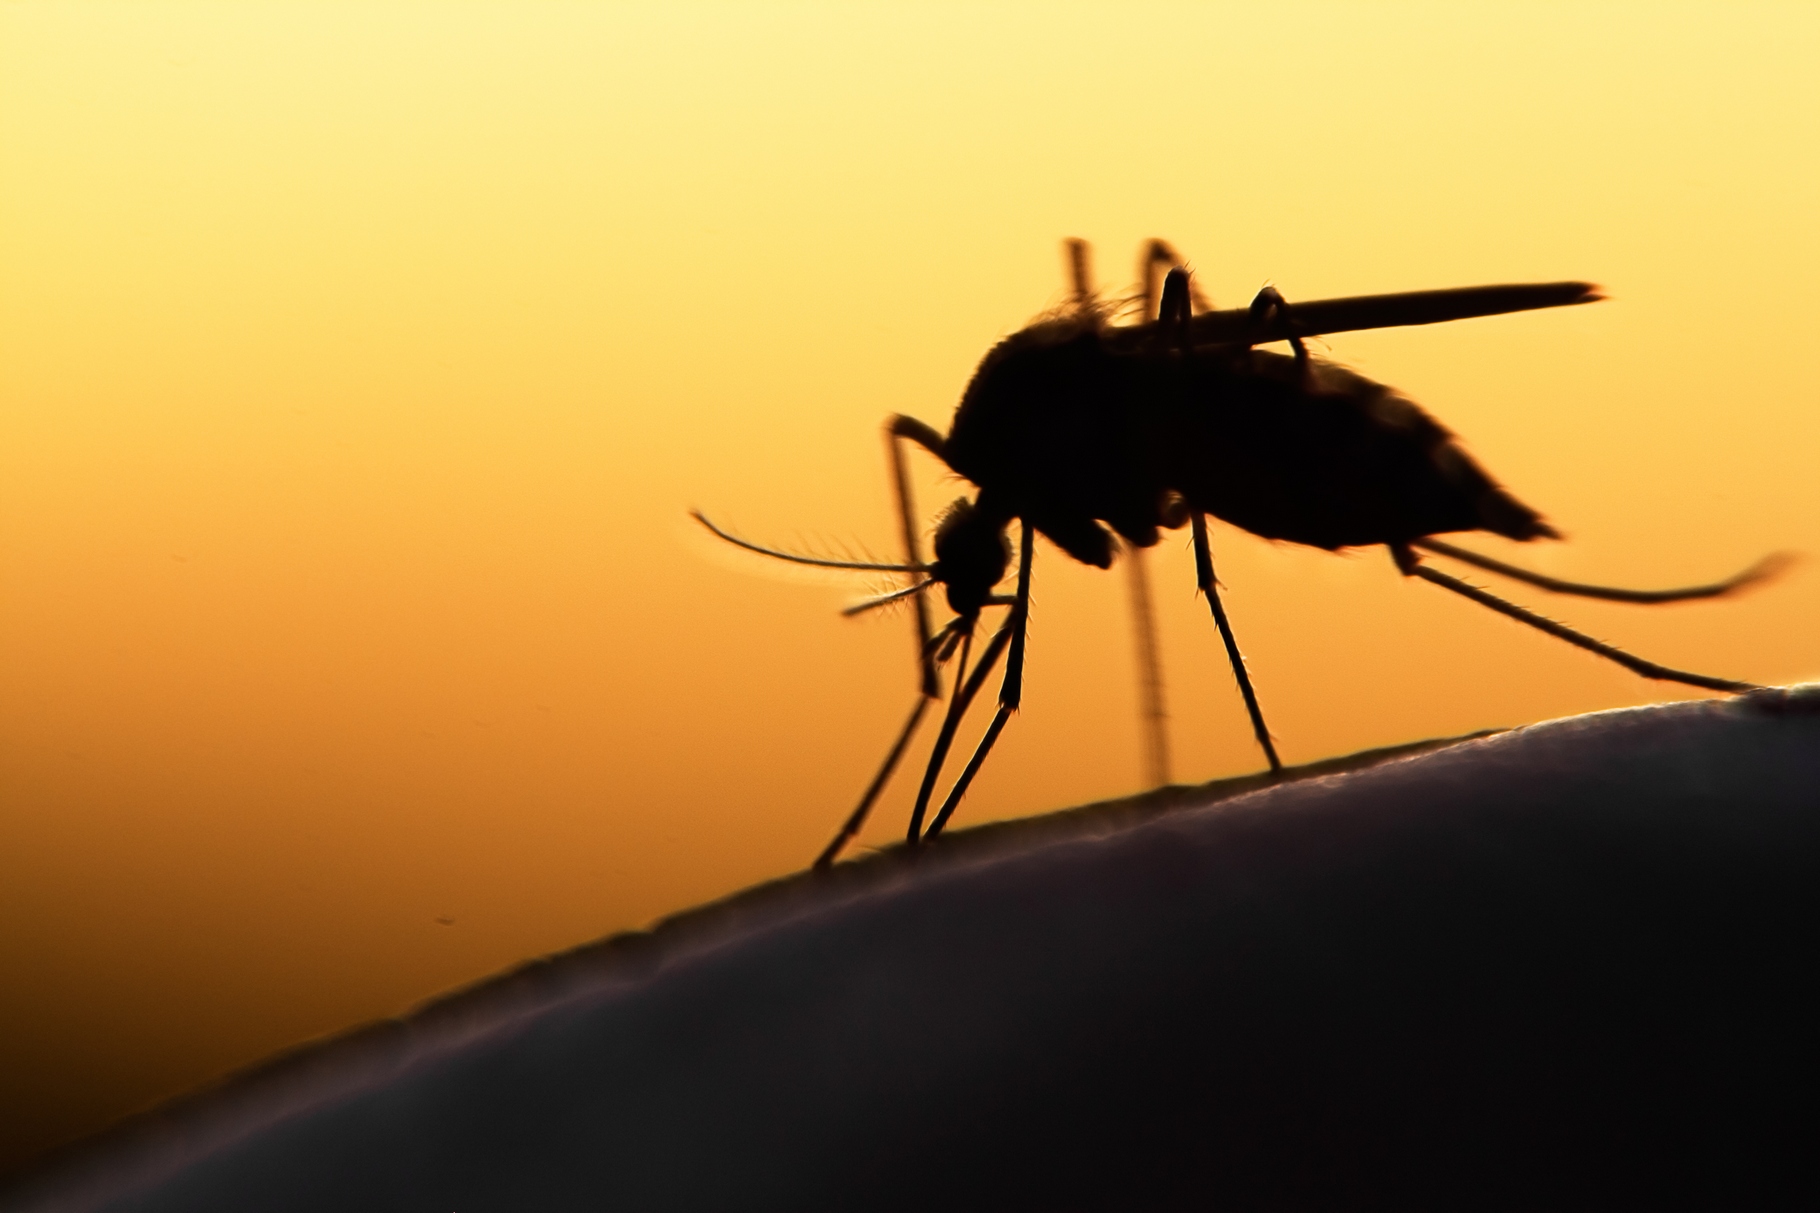 Le Brésil est l’un des pays les plus touchés par le virus Zika. Le concept de panneau publicitaire piège à moustique est une tentative inédite qui pourrait faire école. © Mycteria, Shutterstock